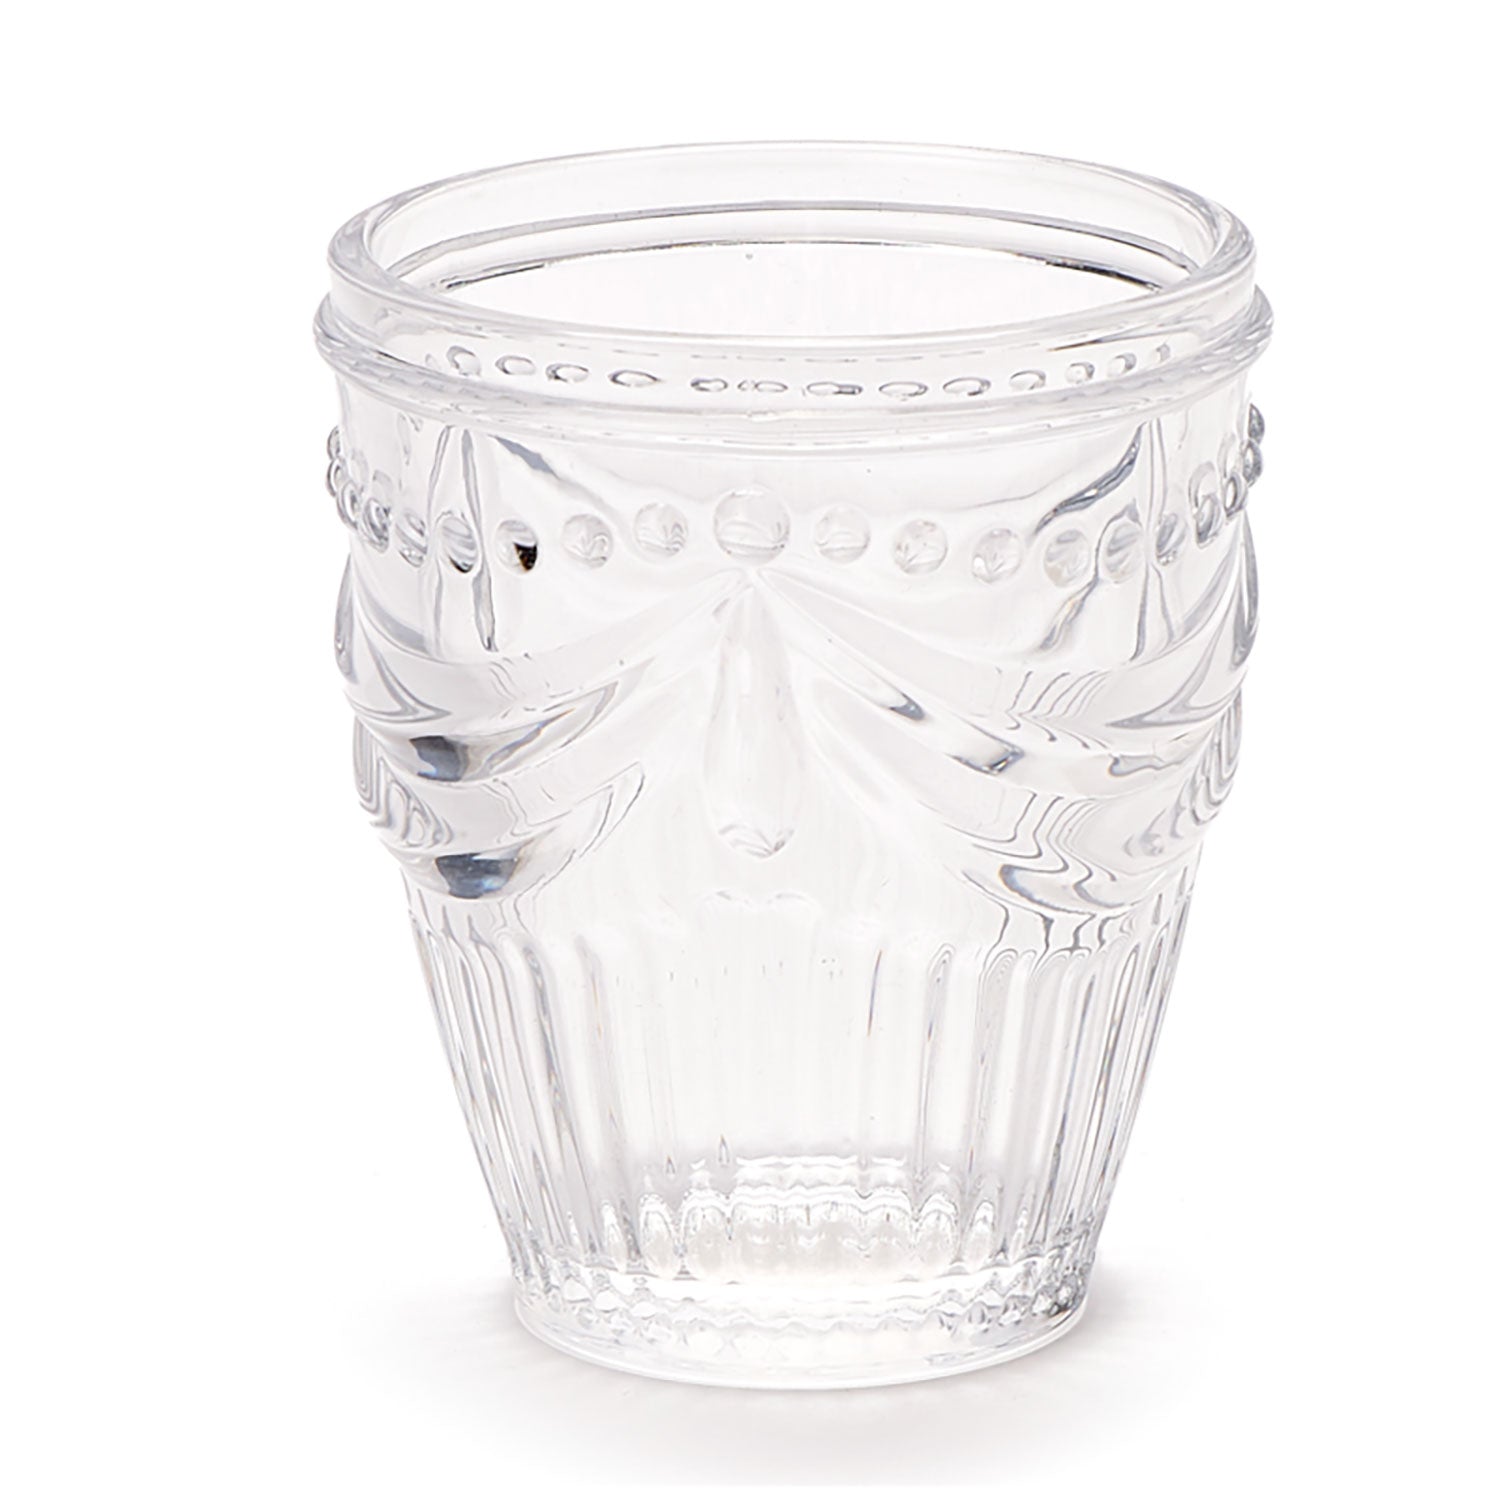 Bicchieri da acqua Nuvole di Stoffa Shabby chic in vetro 6pz h10cm 5289